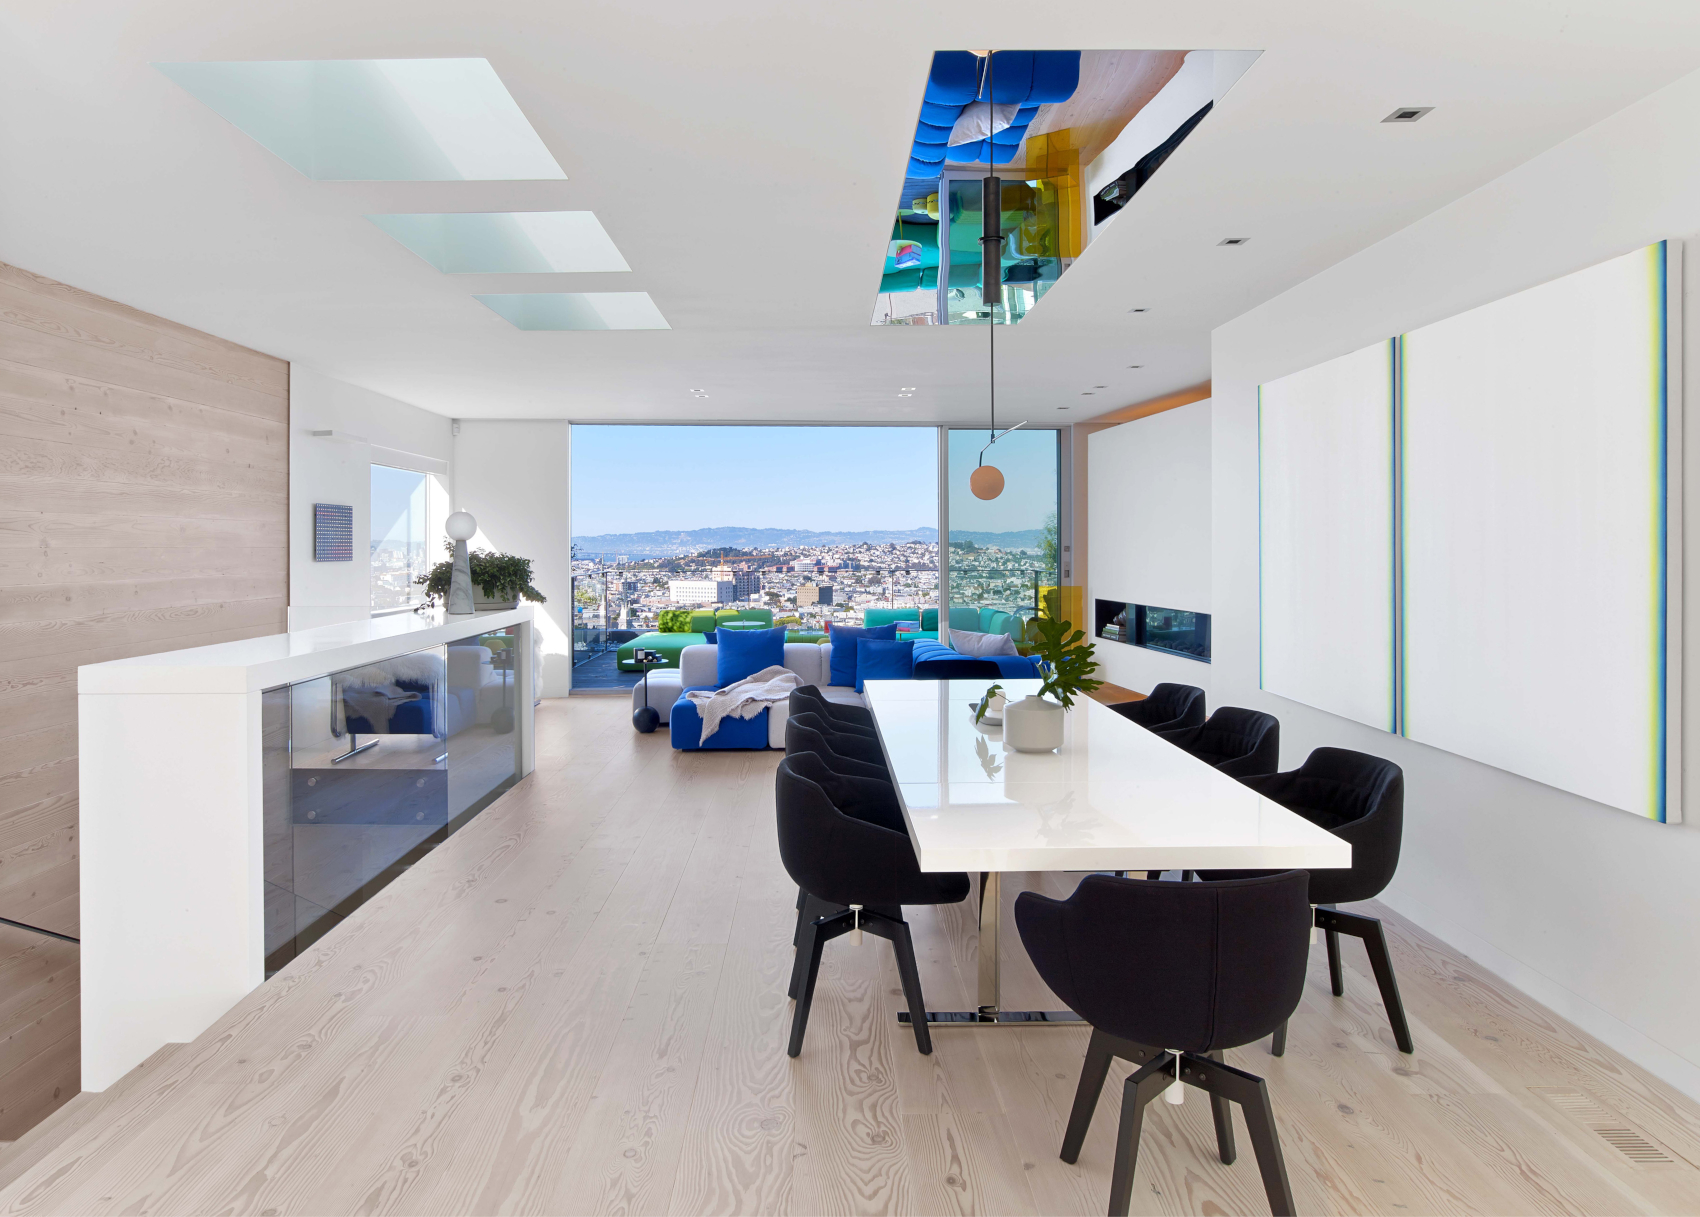 Progetto di design con porte blindate a San Francisco, USA “Residence Glen Park” – Villa Privata - Oikos